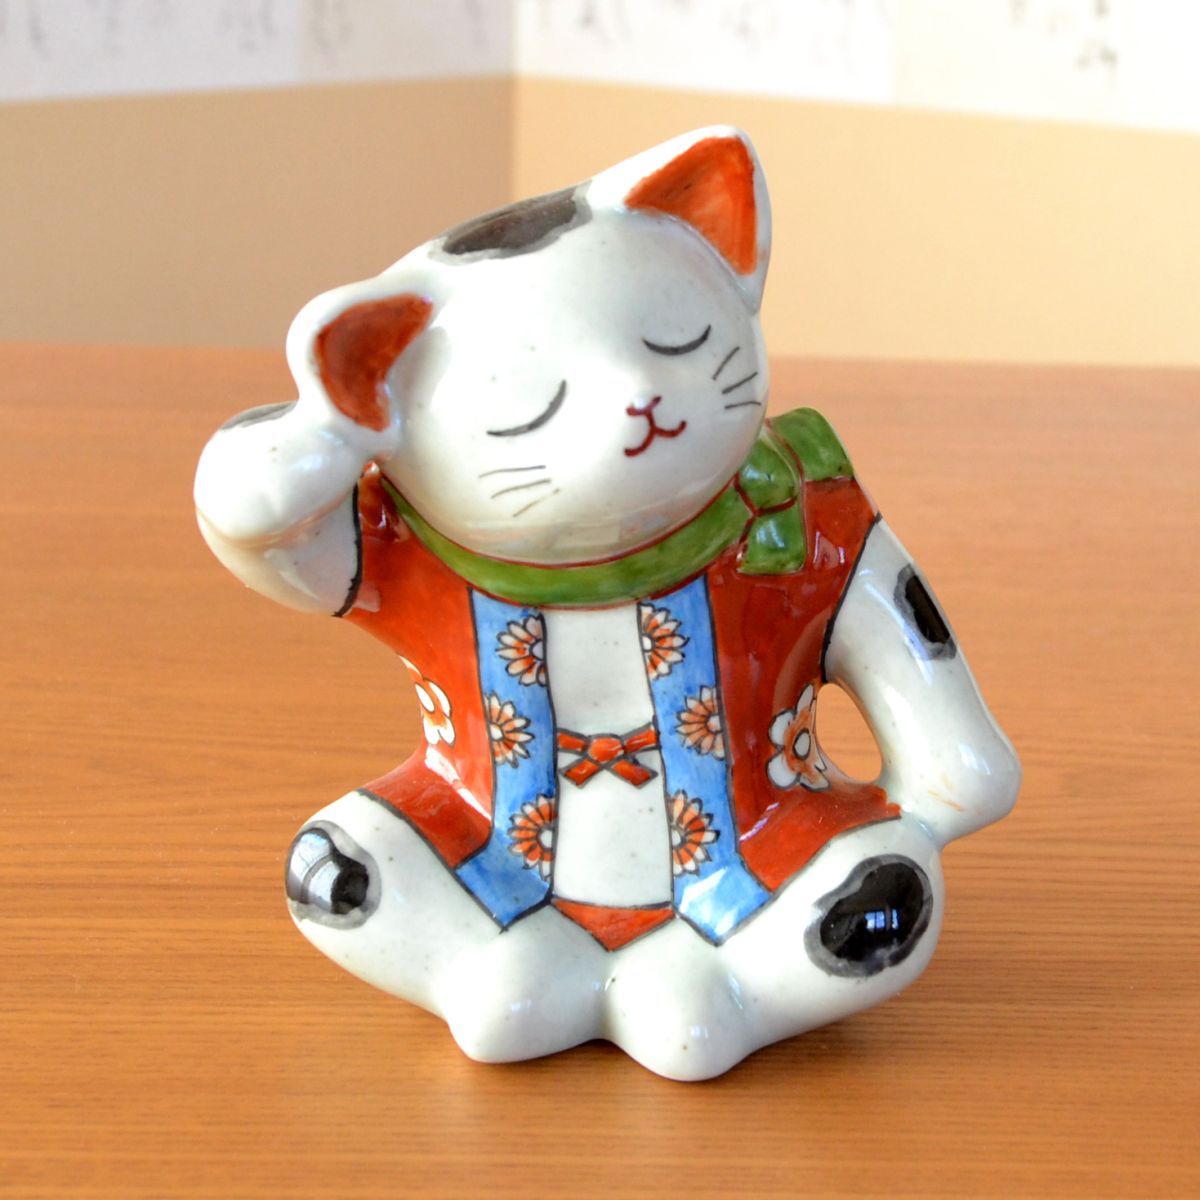 日本のお土産 おみやげ 海外へのおみやげ 伝統工芸品 有田焼 招き猫 あぐら猫 置物 飾り オブジェ 陶器 日本製